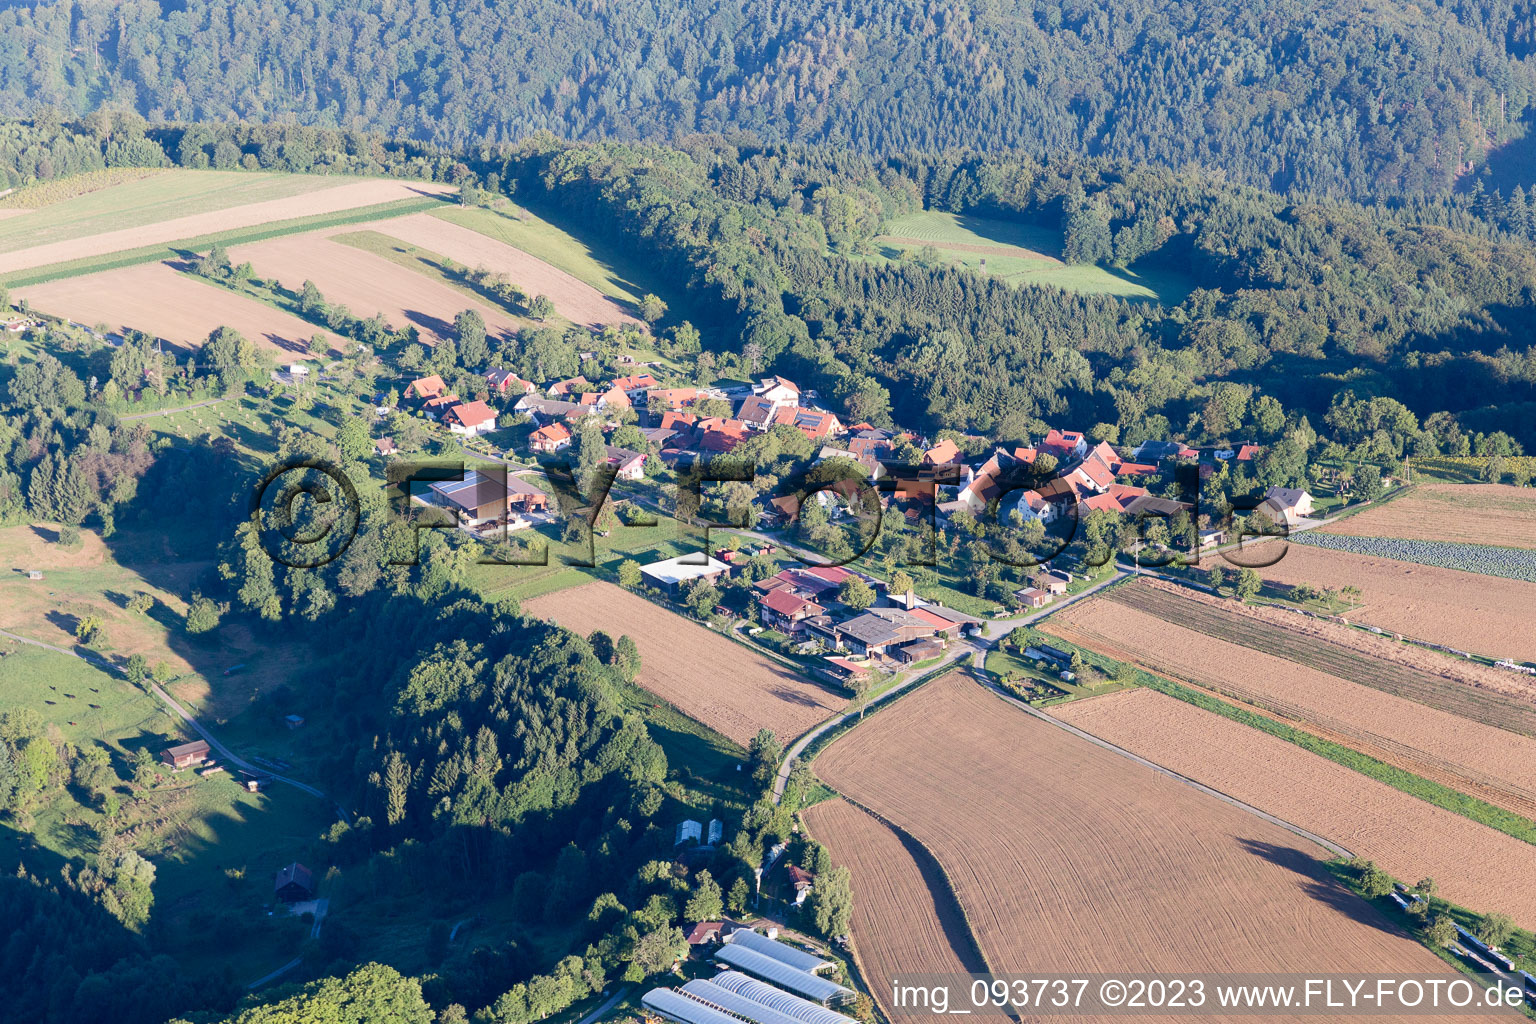 Photographie aérienne de Sulzbach an der Murr dans le département Bade-Wurtemberg, Allemagne